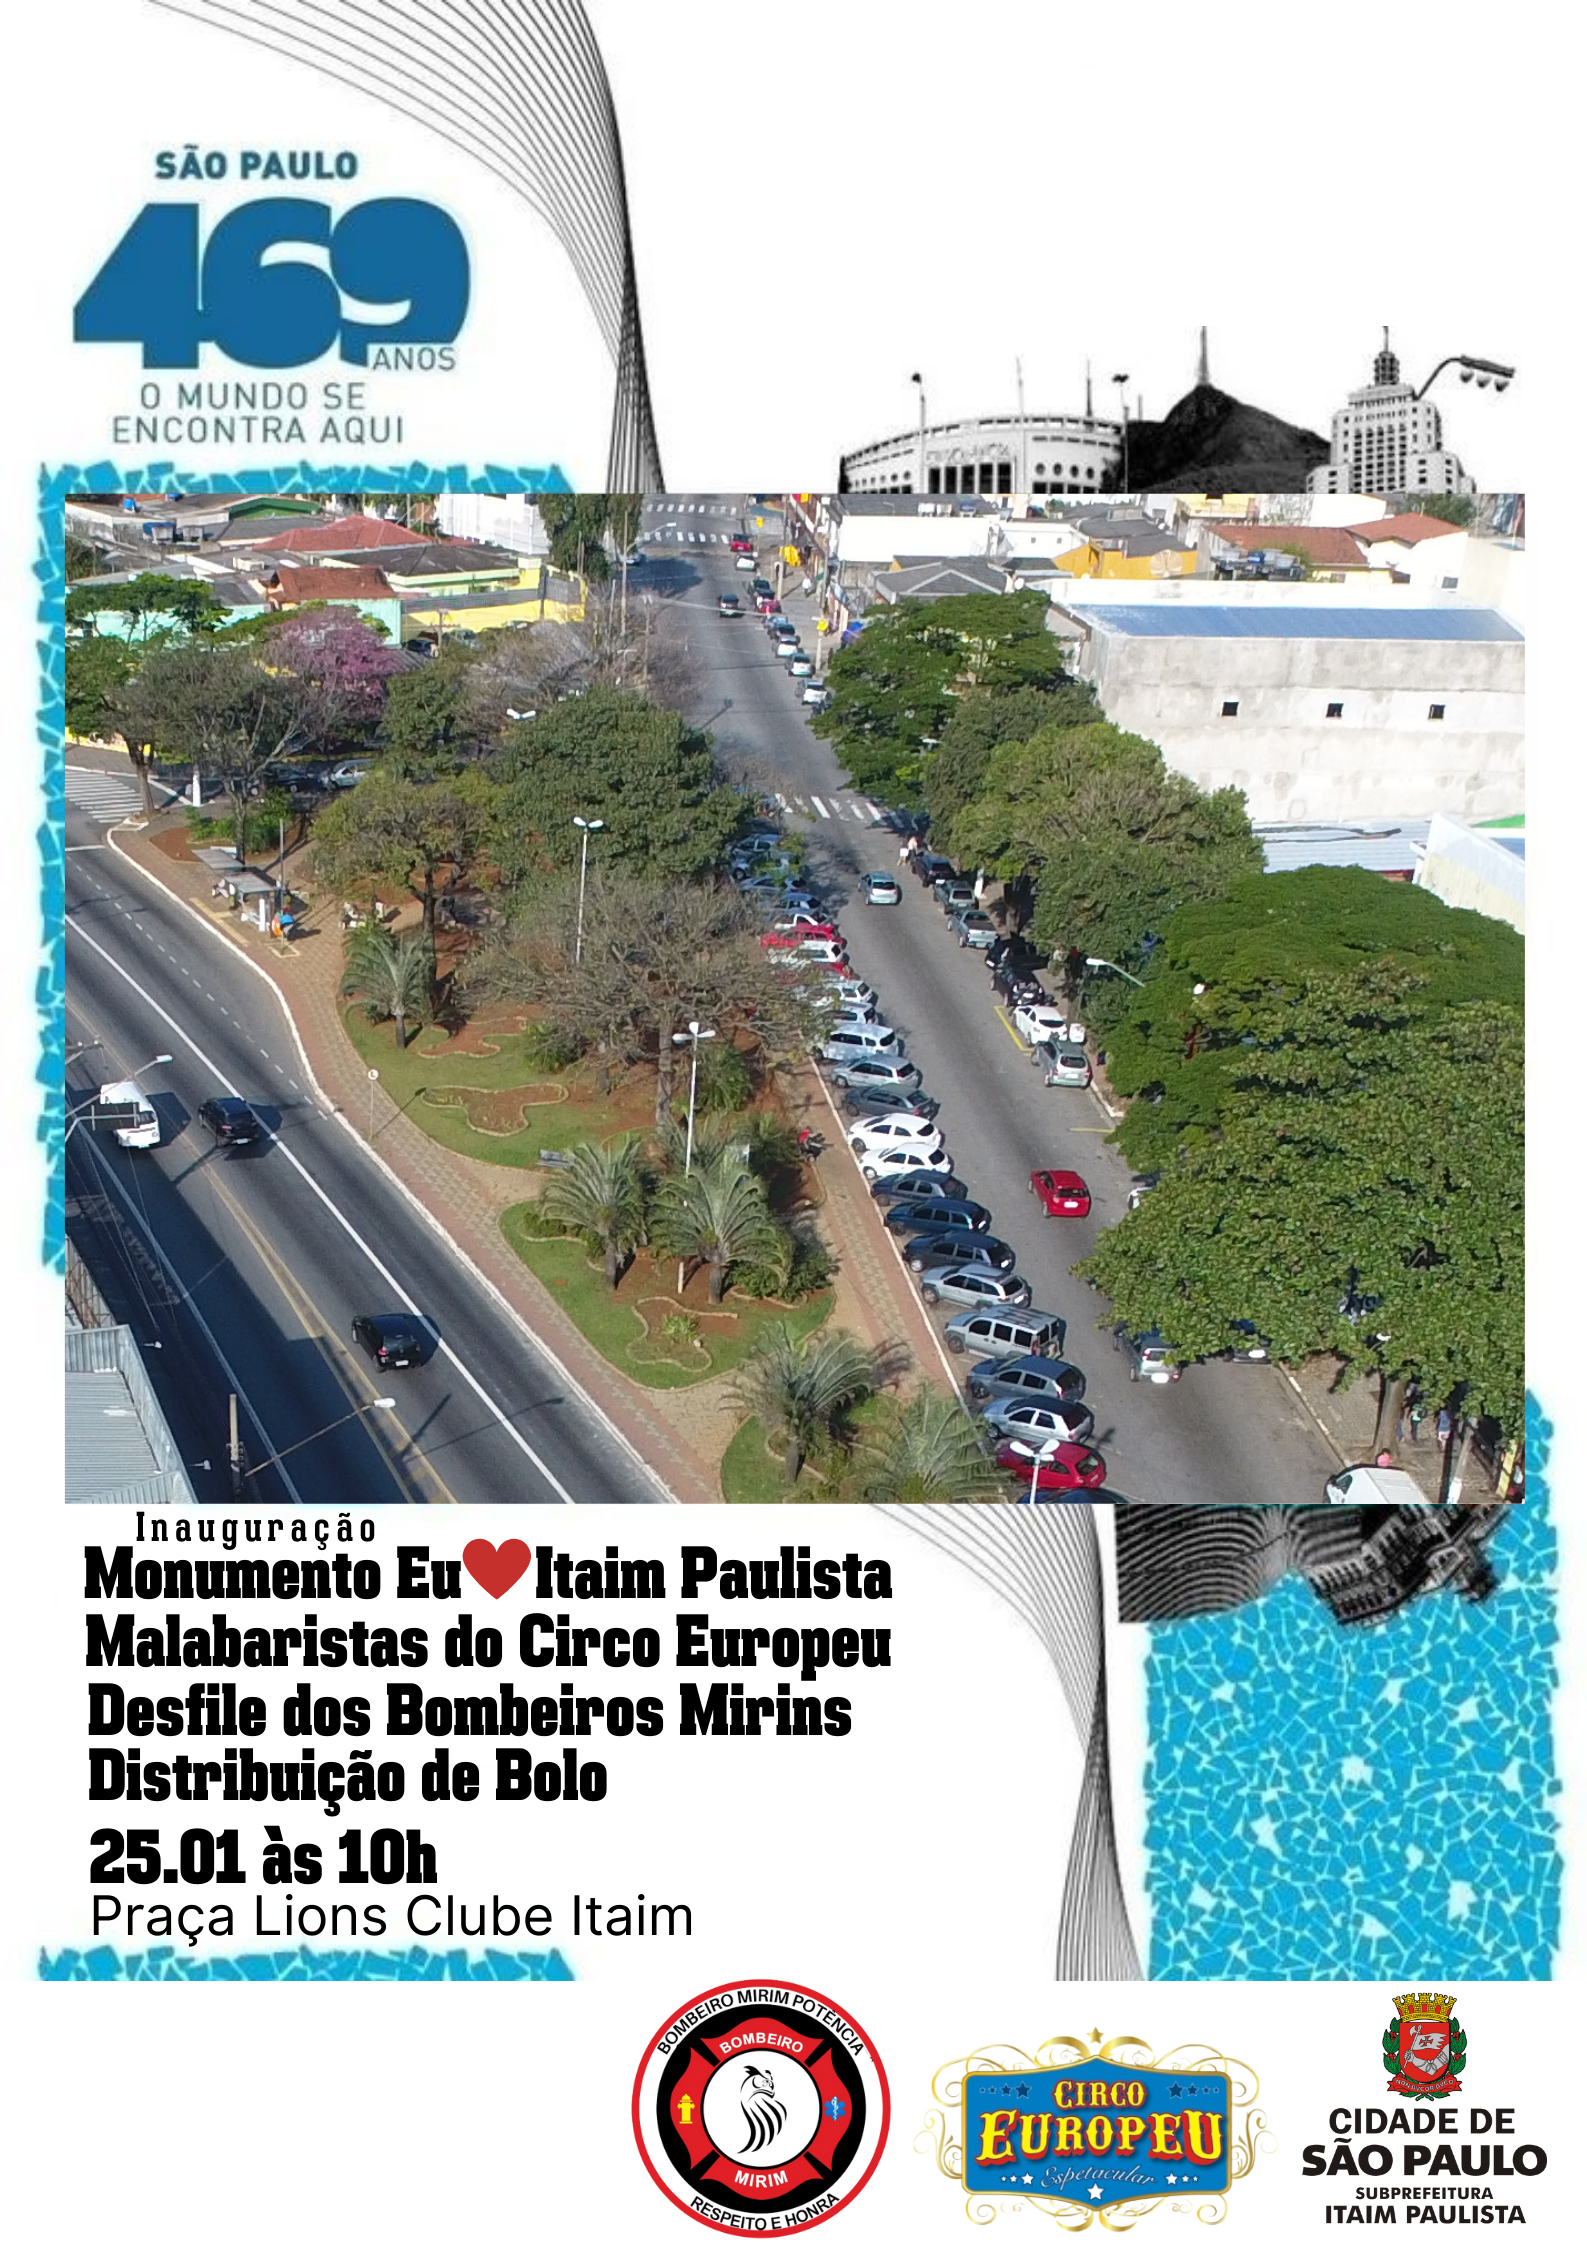 Ilustração do evento de aniversário da cidade de São Paulo com imagem panorâmica da Praça Lions Clube Itaim Paulista, com data, horário e as atrações.